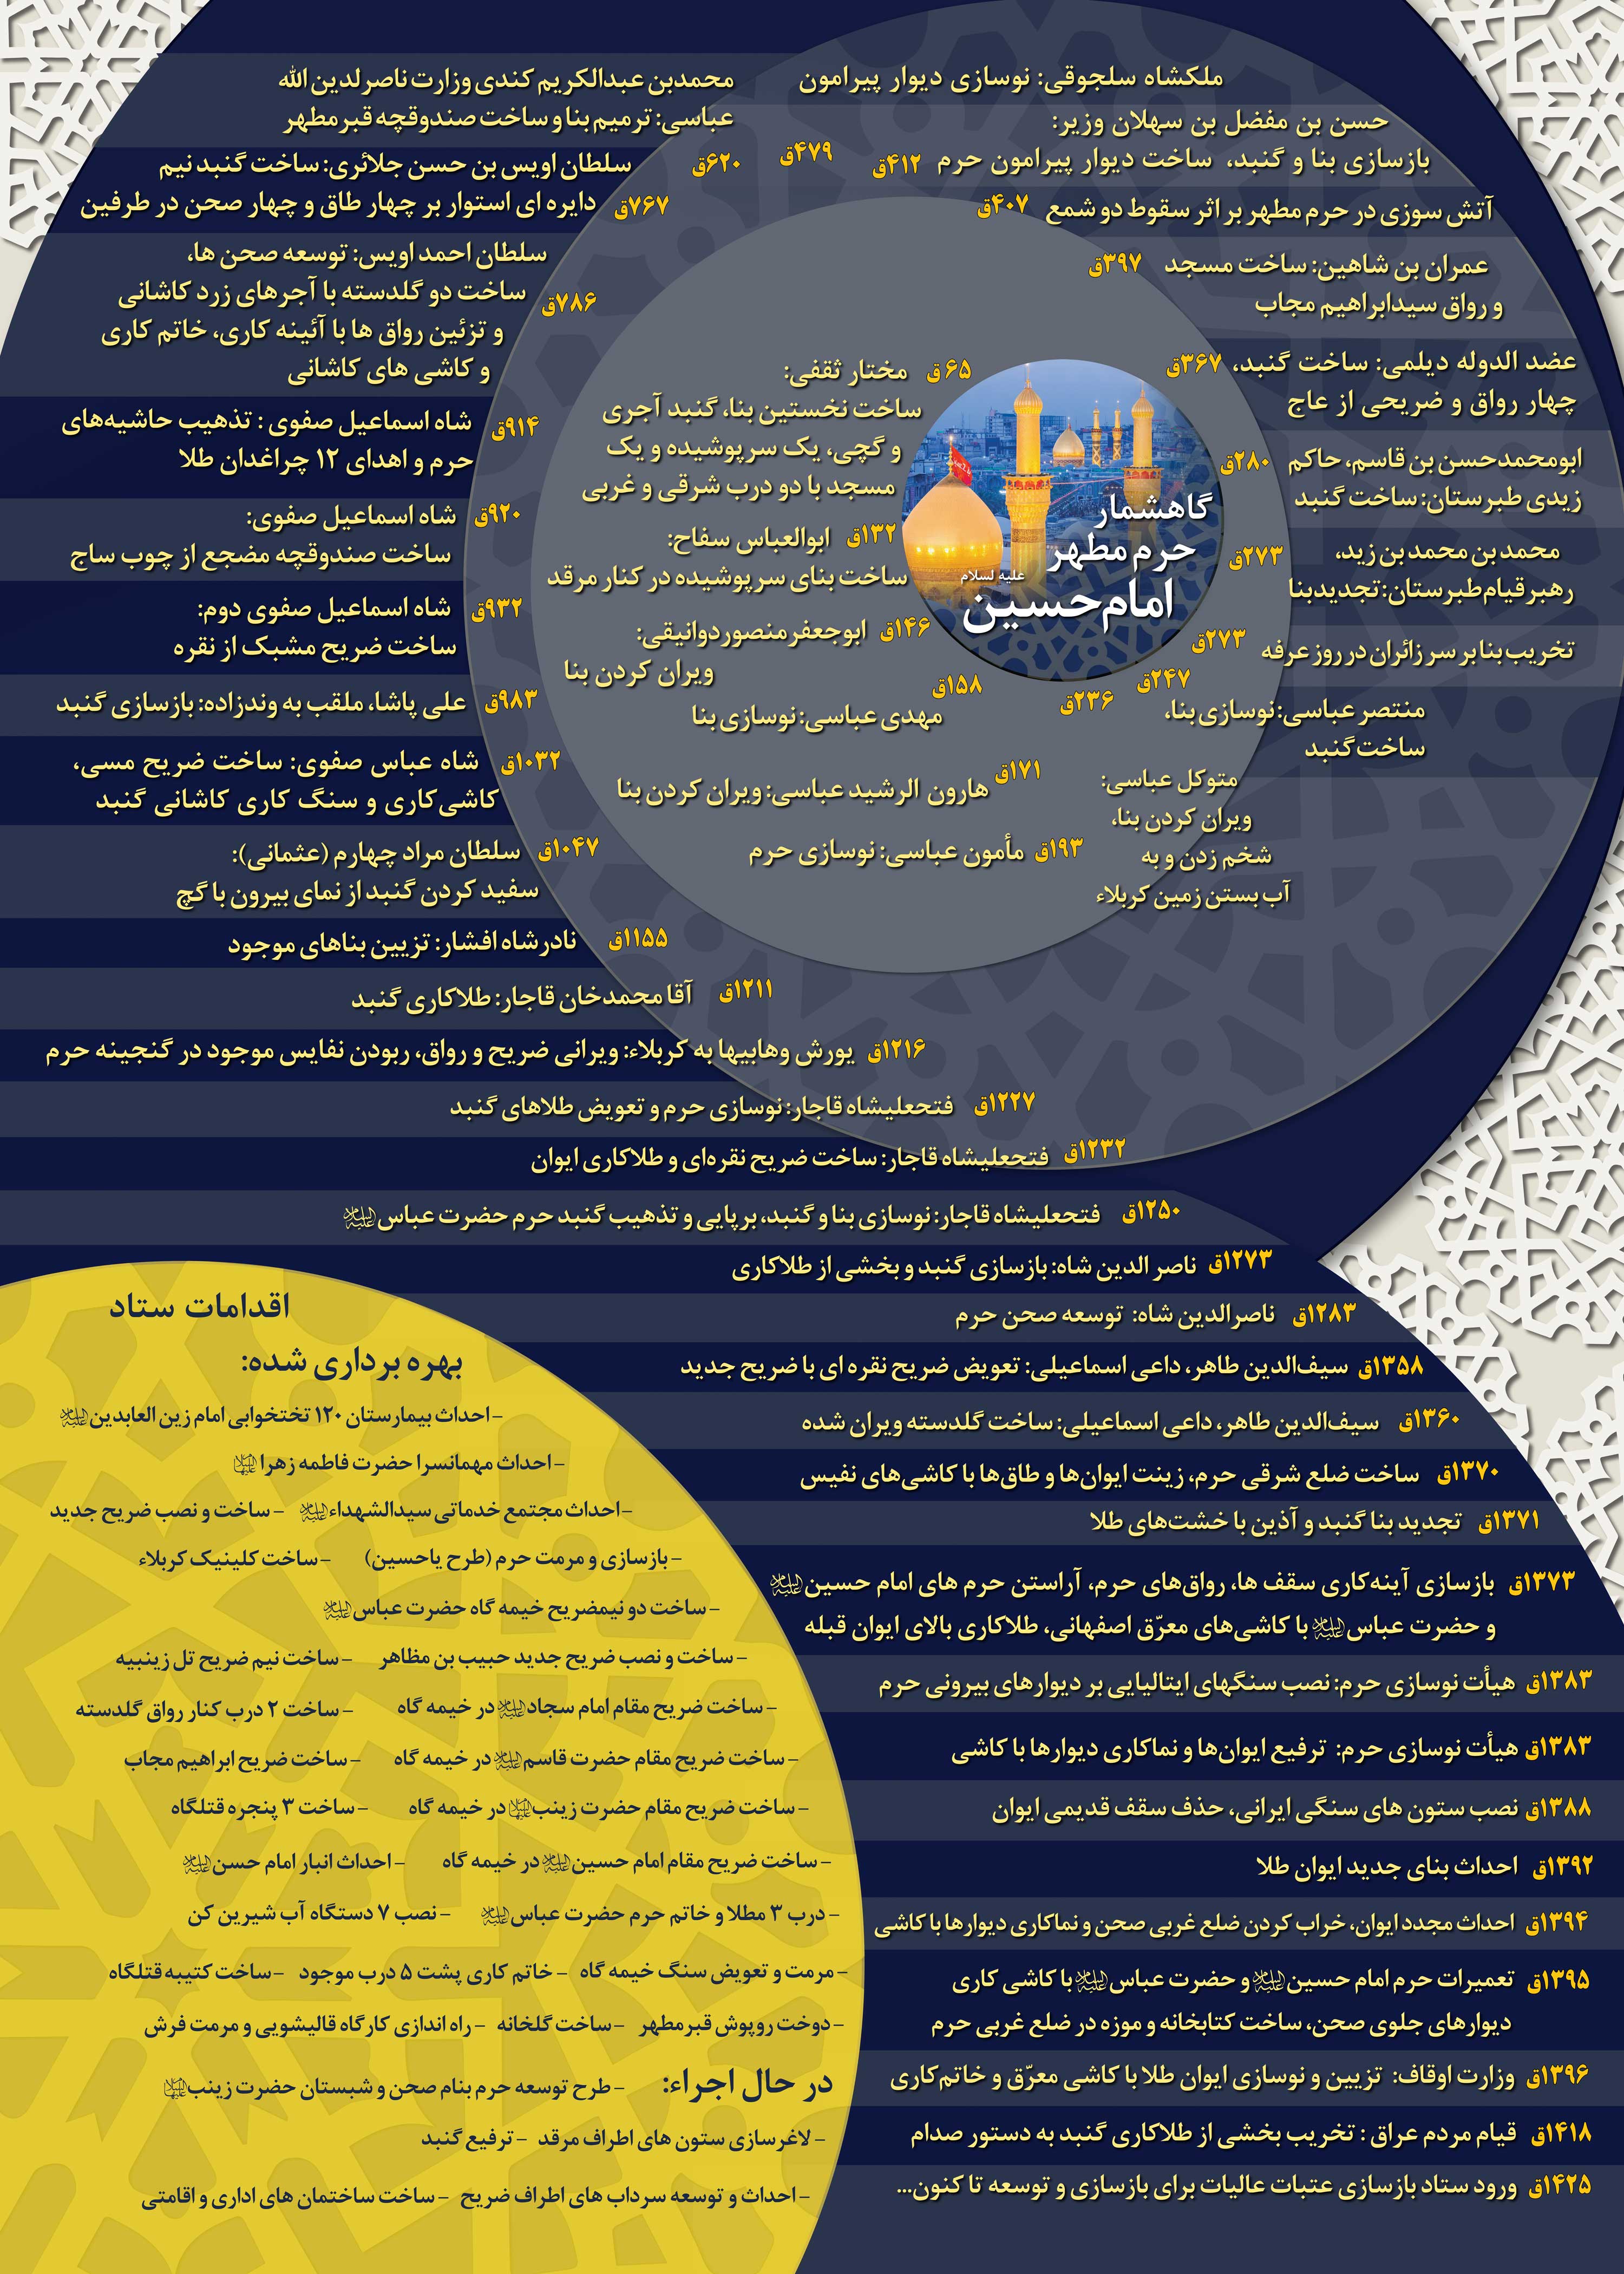 تاریخچه حرم امام حسین علیه السلام + اینفوگرافی